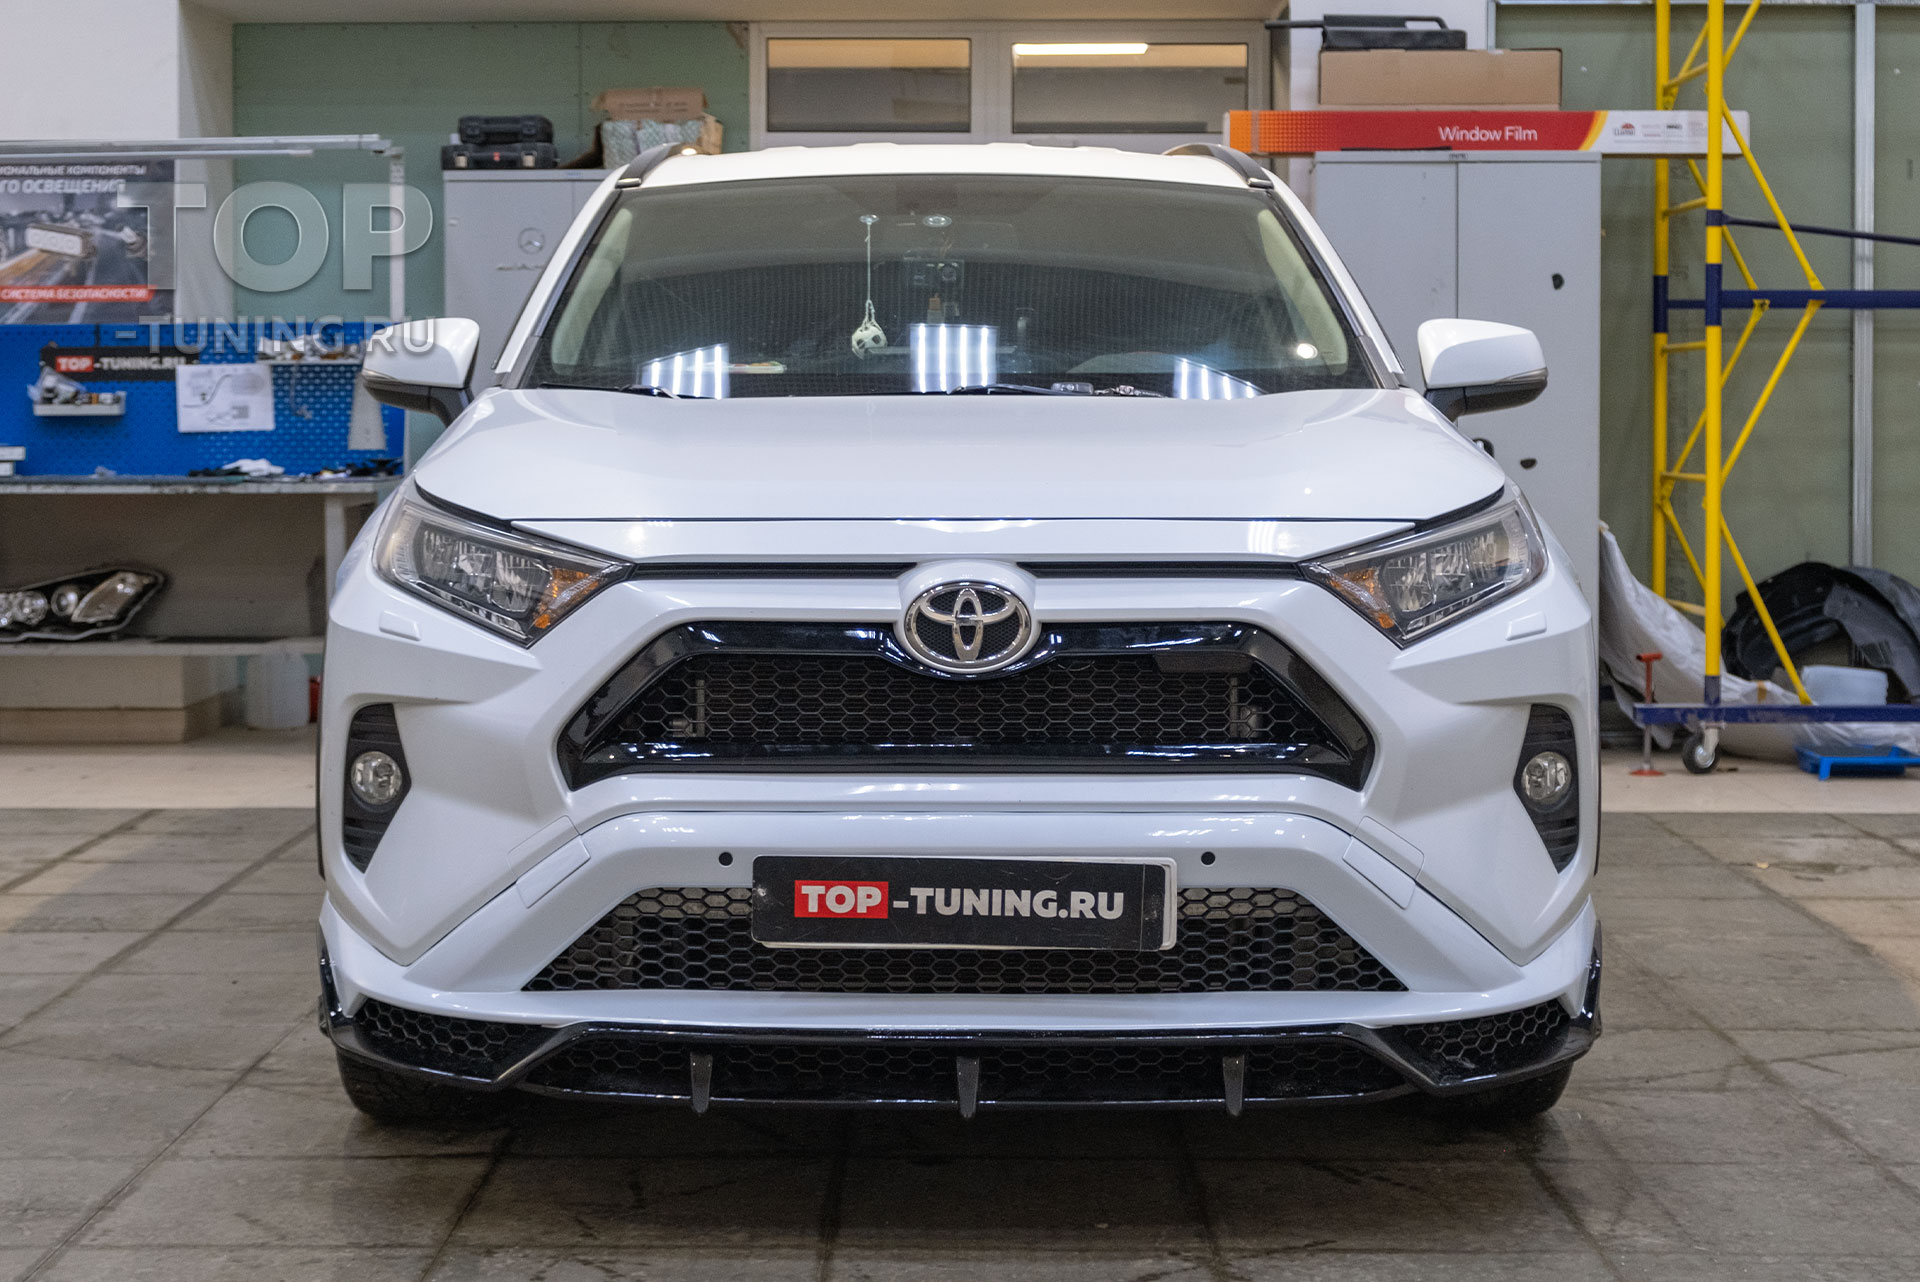 108417 Стильная модернизация заводской внешности Toyota RAV 4 на заказ